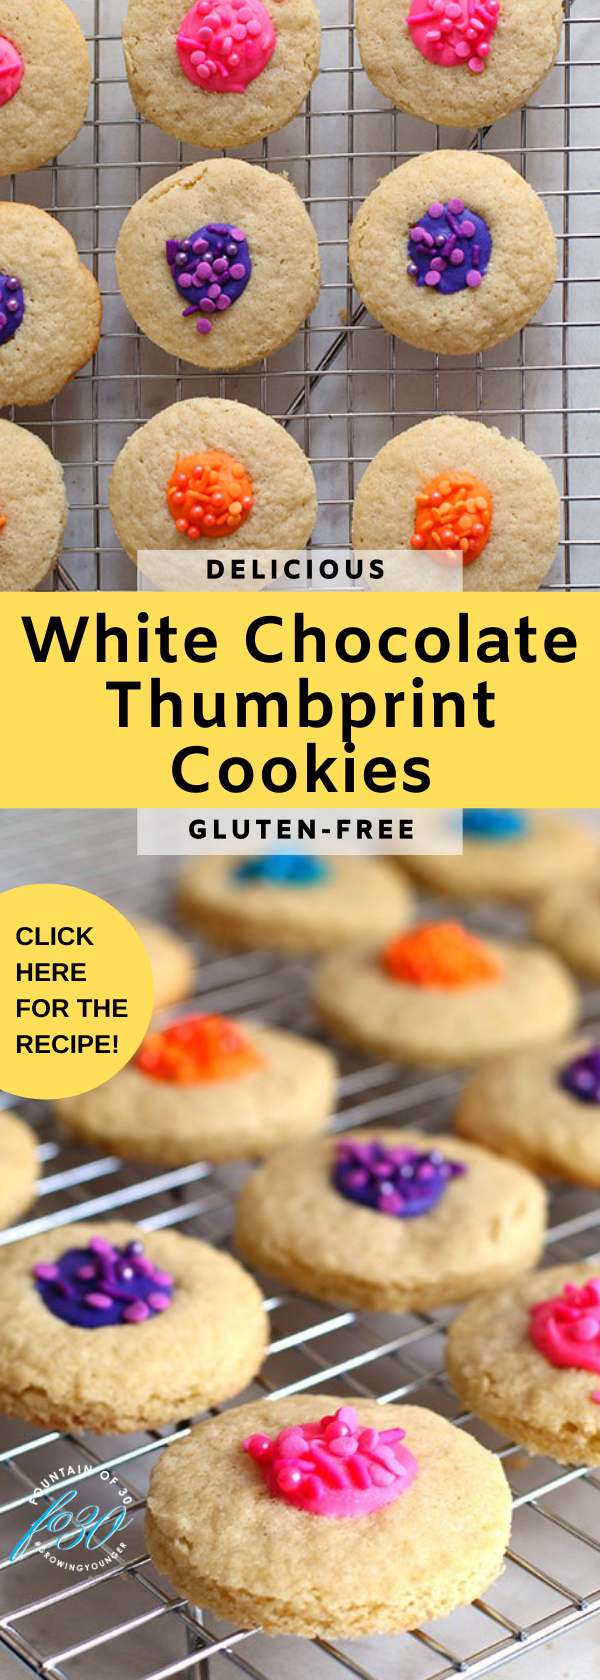 gluten free white chocolate thumbprint cookies fountainof30